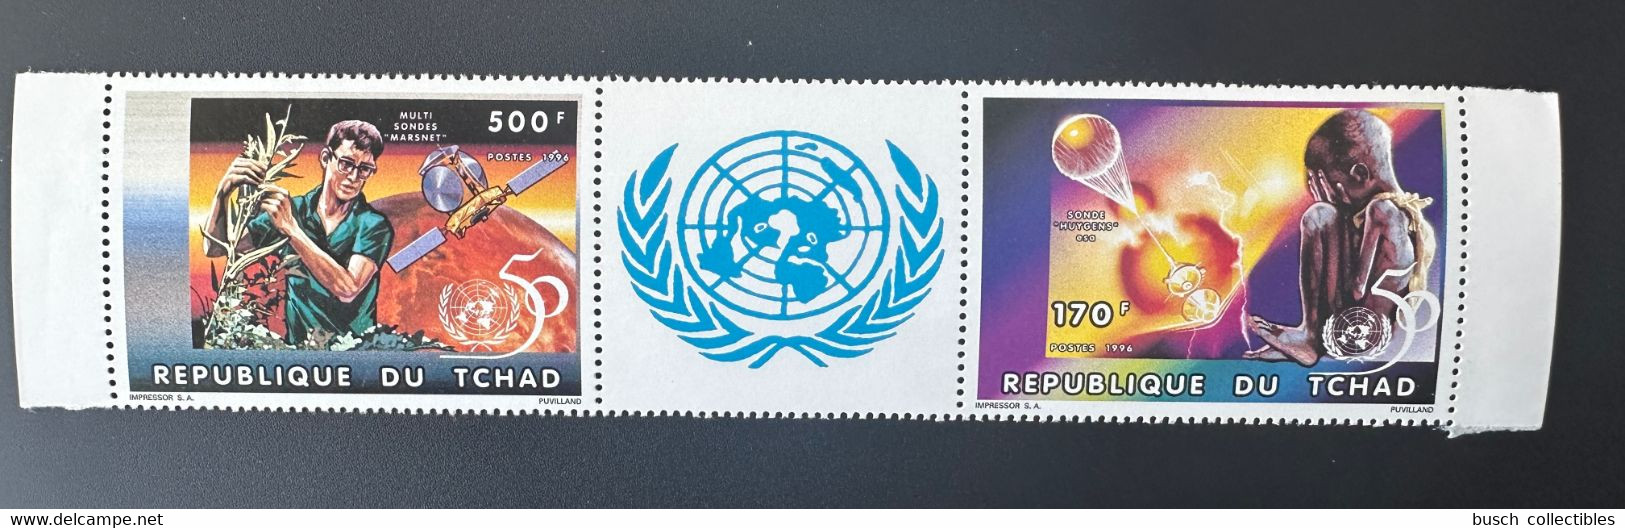 Tchad Chad Tschad 1996 Mi. 1357a - 1358a A United Nations Unies Vereinte Nationen UNO ONU UN 50 Ans Jahre Years - ONU